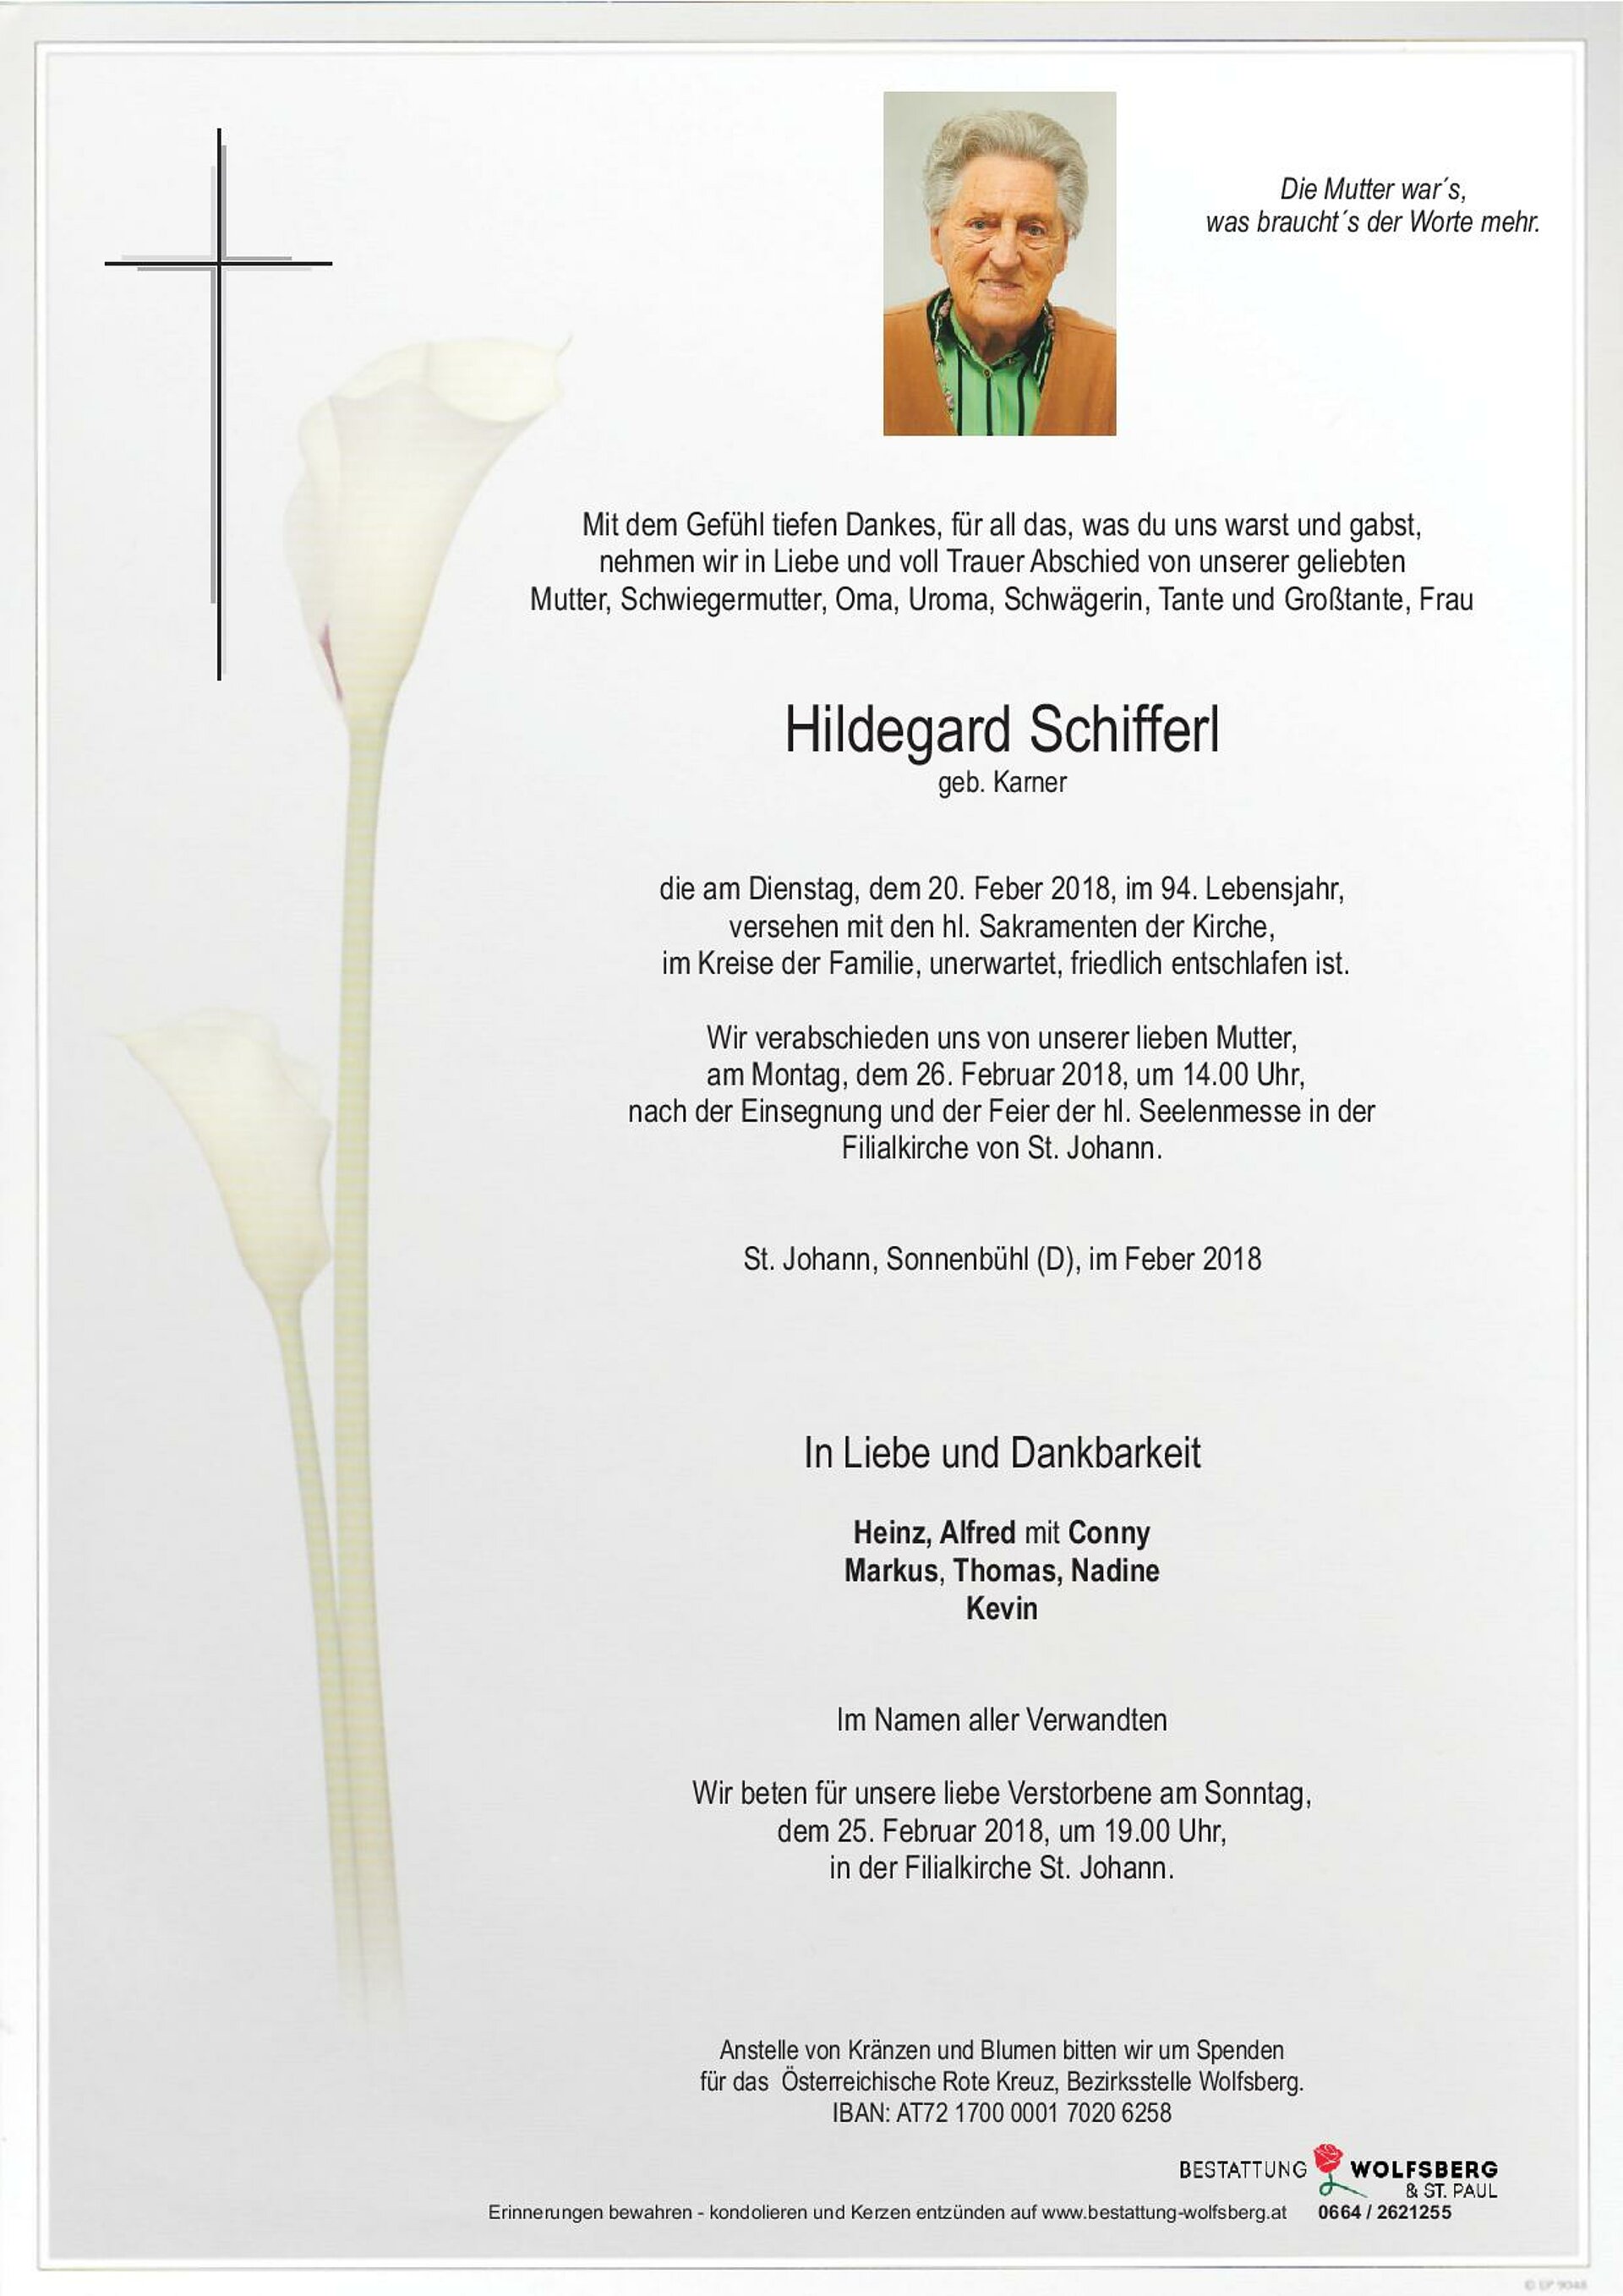 Schifferl-Hildegard-page-001.jpg